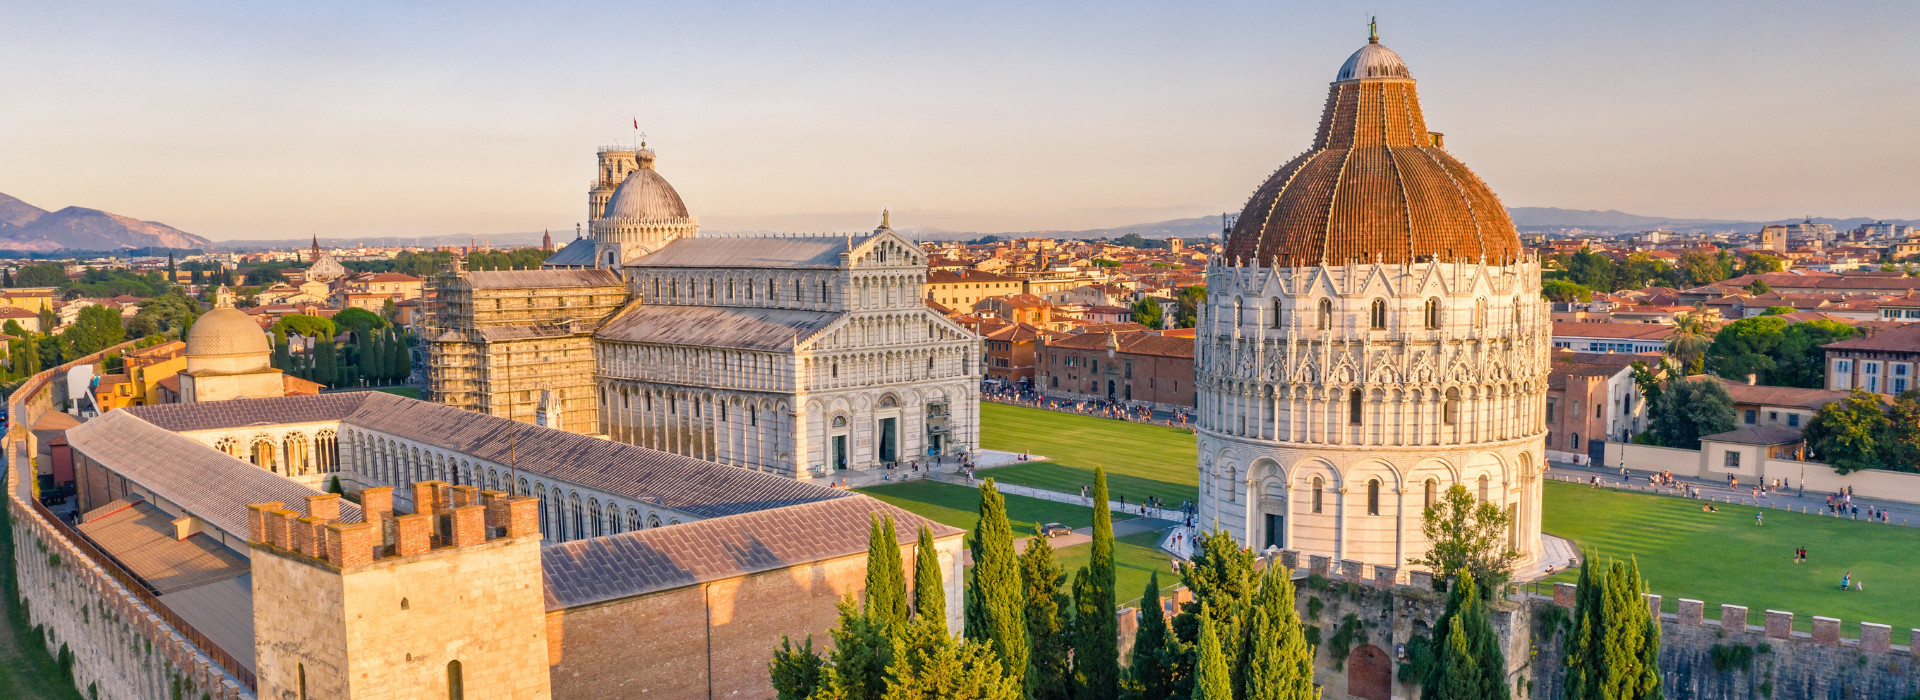 Pisa, Piazza dei Miracoli e Mura